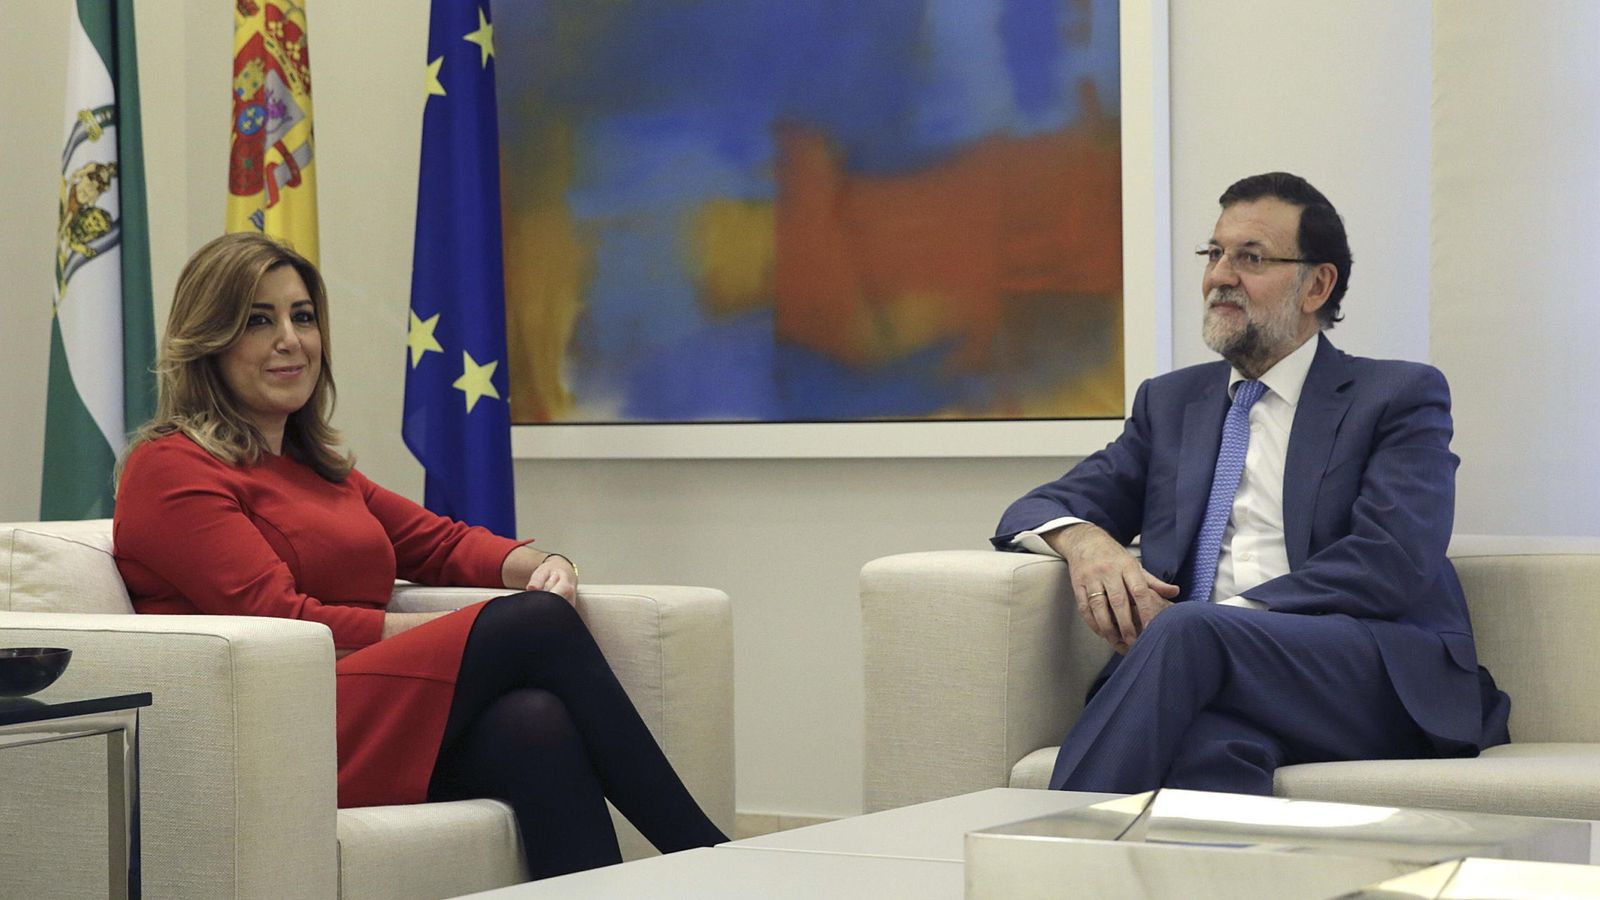 Foto: El presidente del Gobierno, Mariano Rajoy, conversa con la presidenta de Andalucía, Susana Díaz, durante una entrevista mantenida en el Palacio de la Moncloa. (EFE)